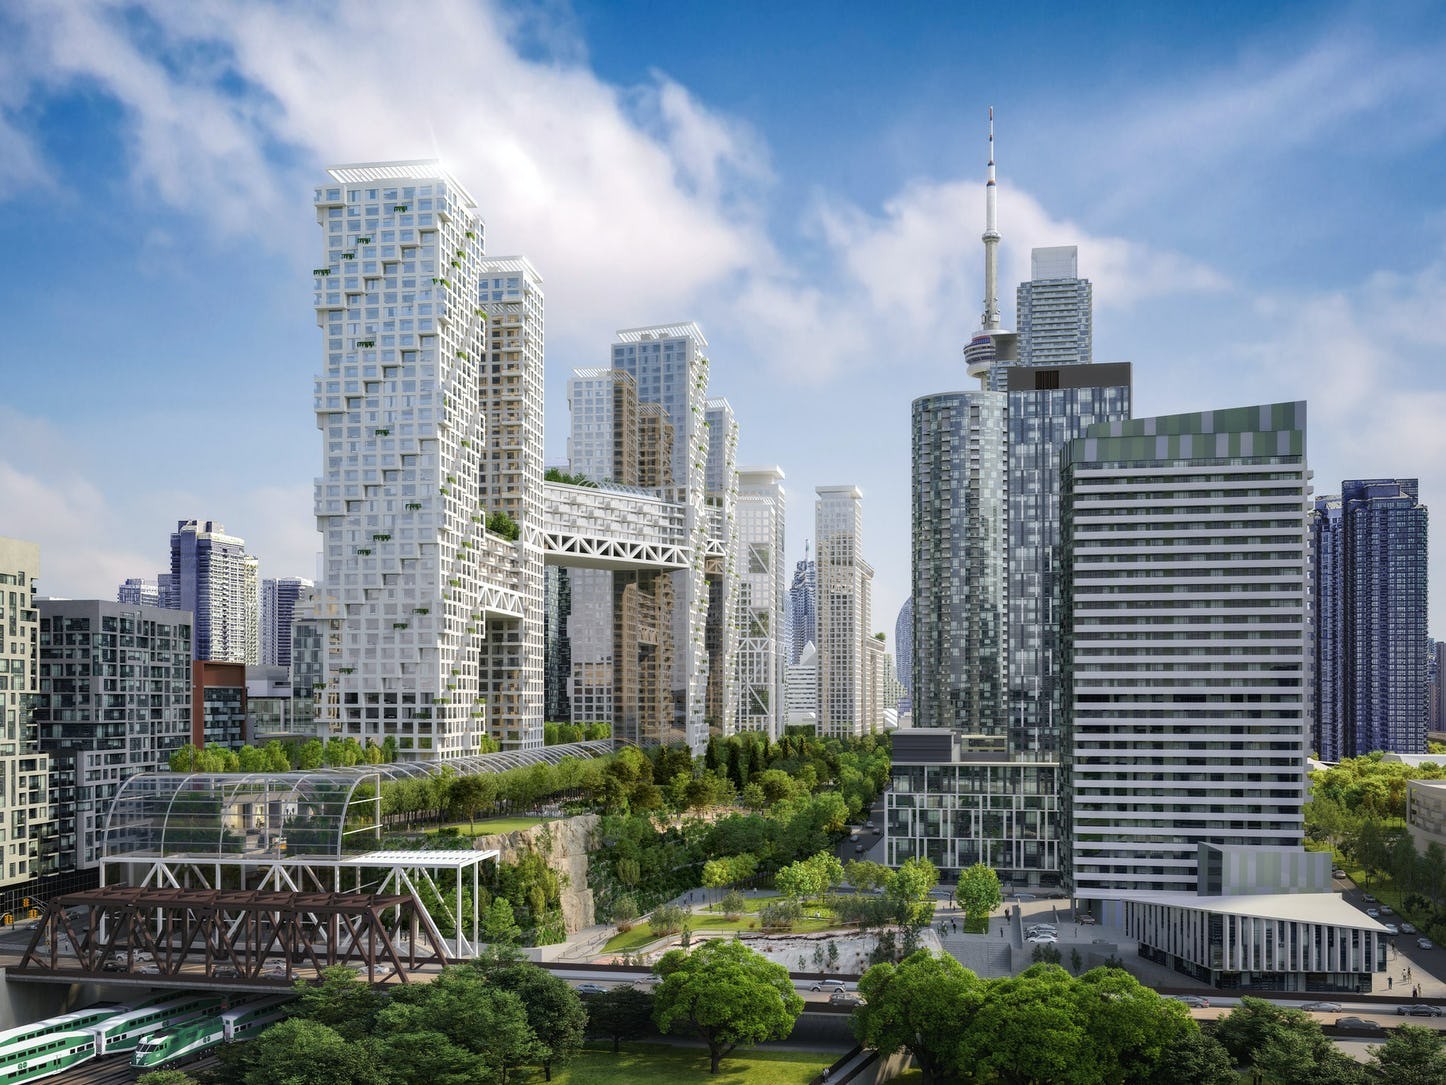 Oito torres seriam destinadas a unidades habitacionais, com três mil unidades residenciais (Foto: Safdie Architects)